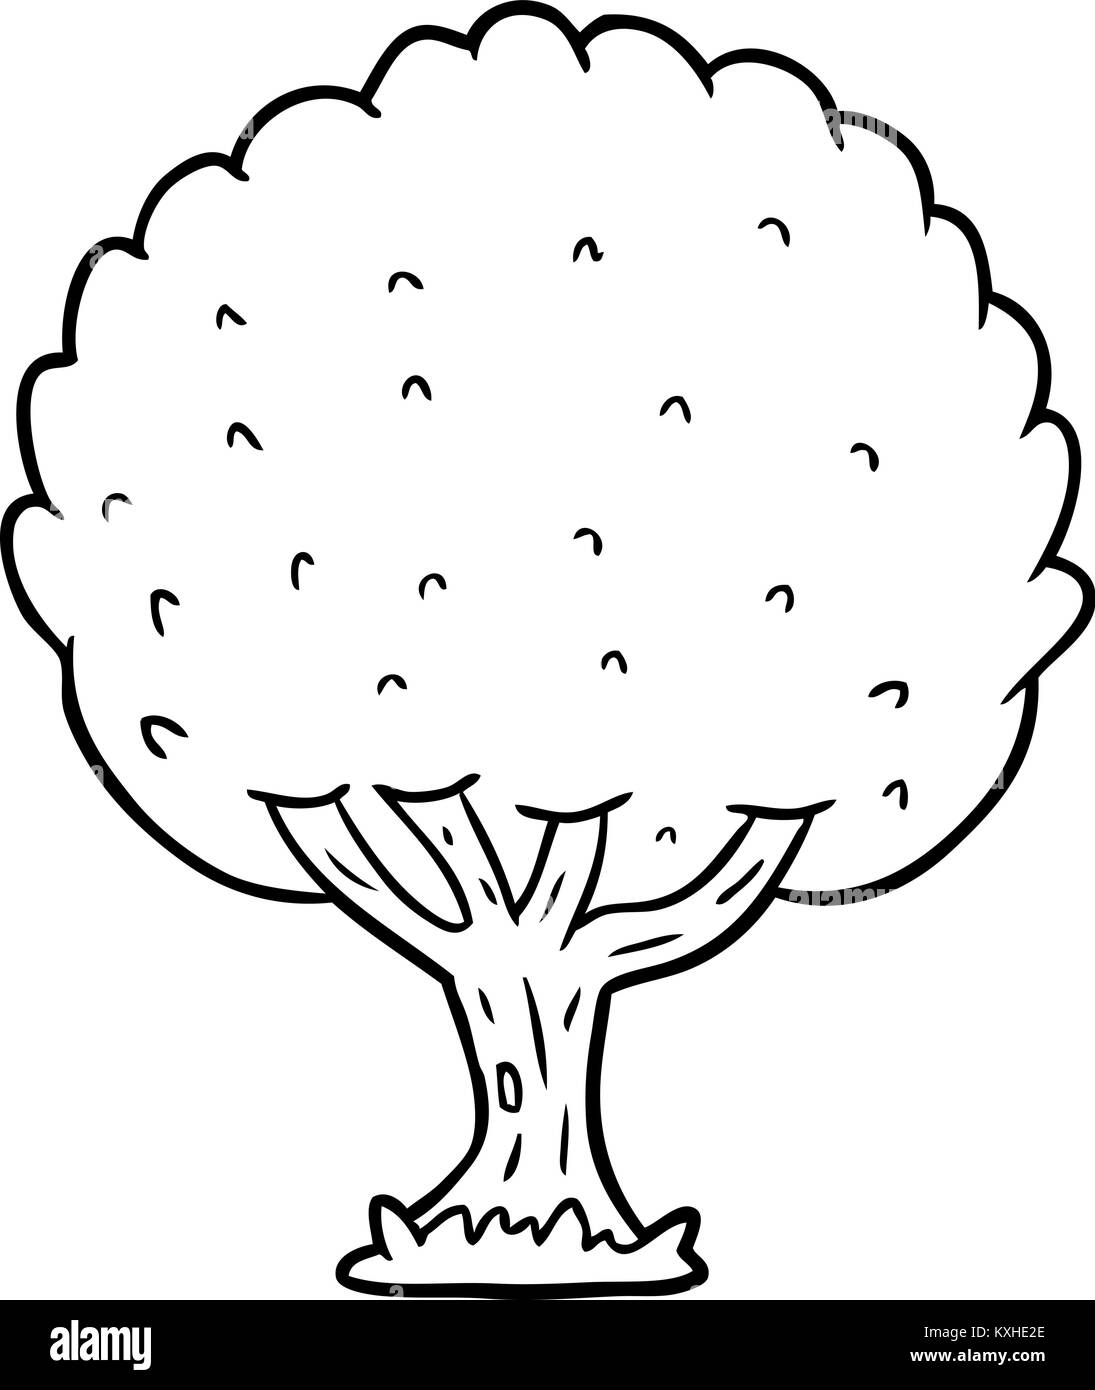 Disegno della linea di un albero Immagine e Vettoriale - Alamy